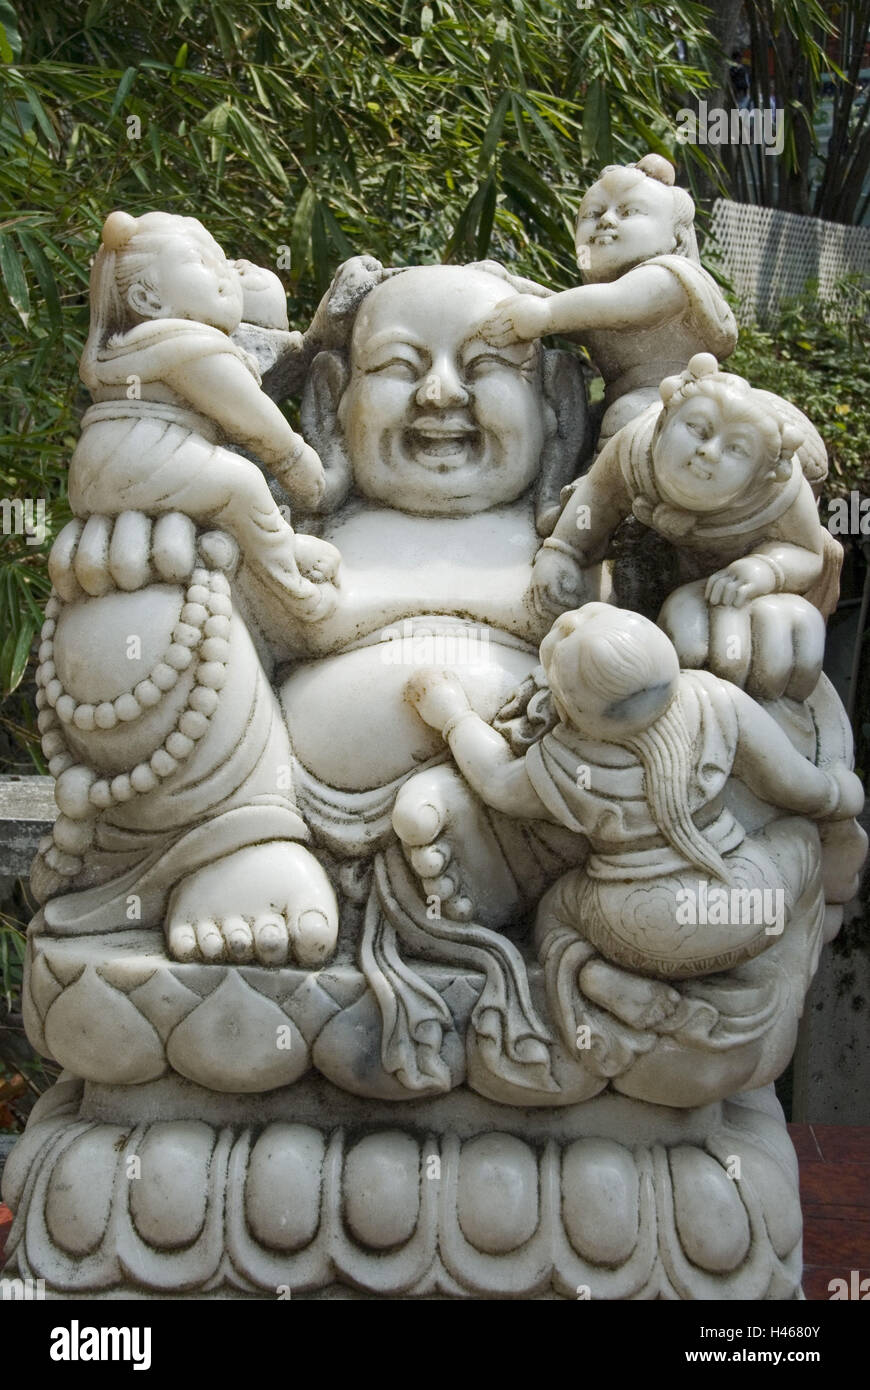 China, Hong Kong, Hong Kong Iceland, Repulse Bay, Tin Han temple, Buddha's figure, Stock Photo